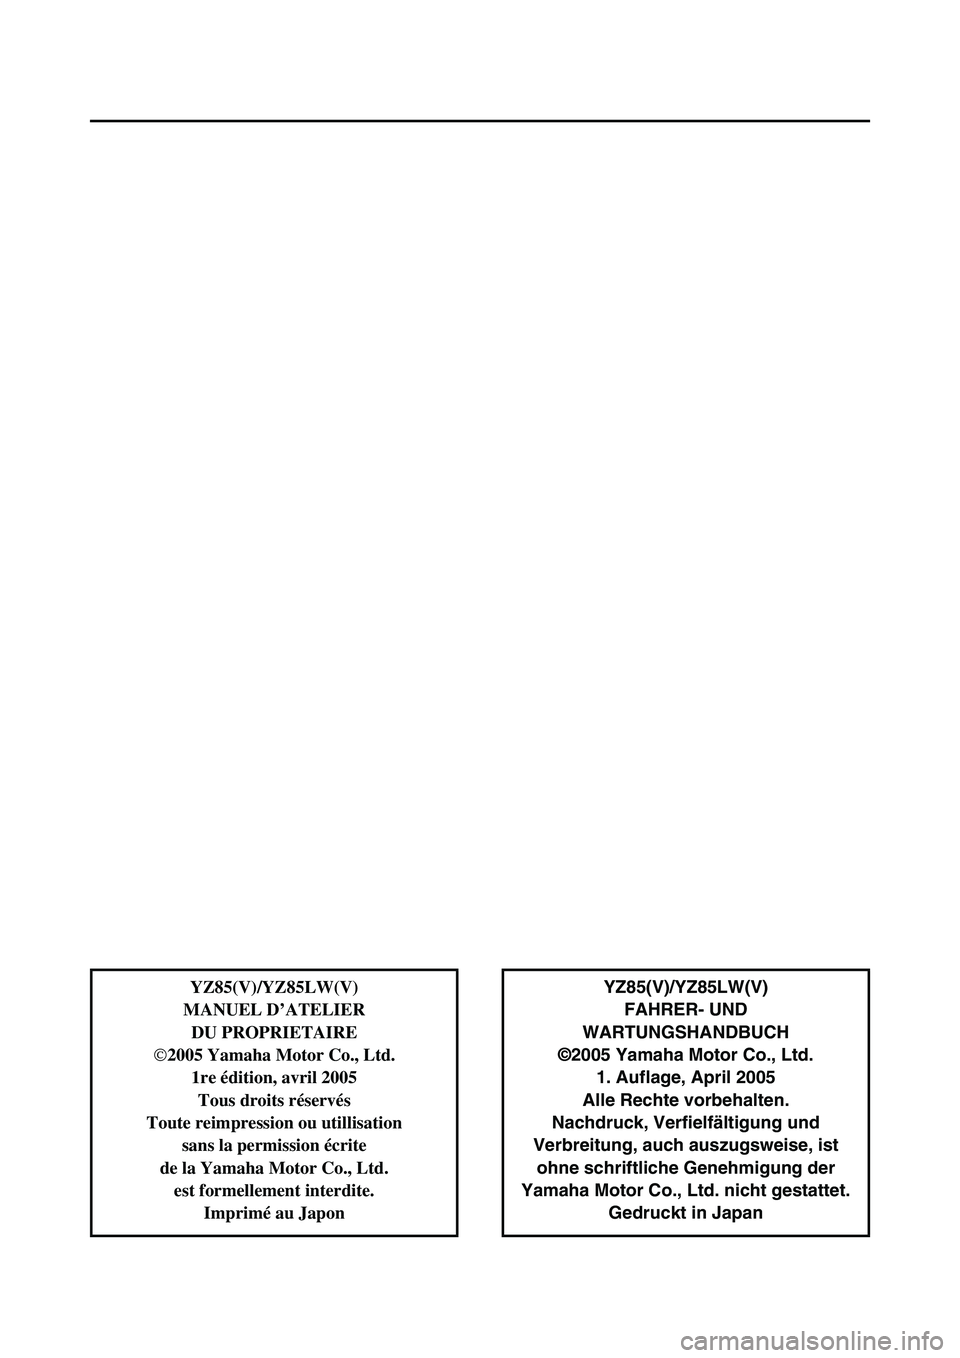 YAMAHA YZ85 2006  Owners Manual YZ85(V)/YZ85LW(V)
FAHRER- UND
WARTUNGSHANDBUCH
©2005 Yamaha Motor Co., Ltd.
1. Auflage, April 2005
Alle Rechte vorbehalten.
Nachdruck, Verfielfältigung und
Verbreitung, auch auszugsweise, ist
ohne s